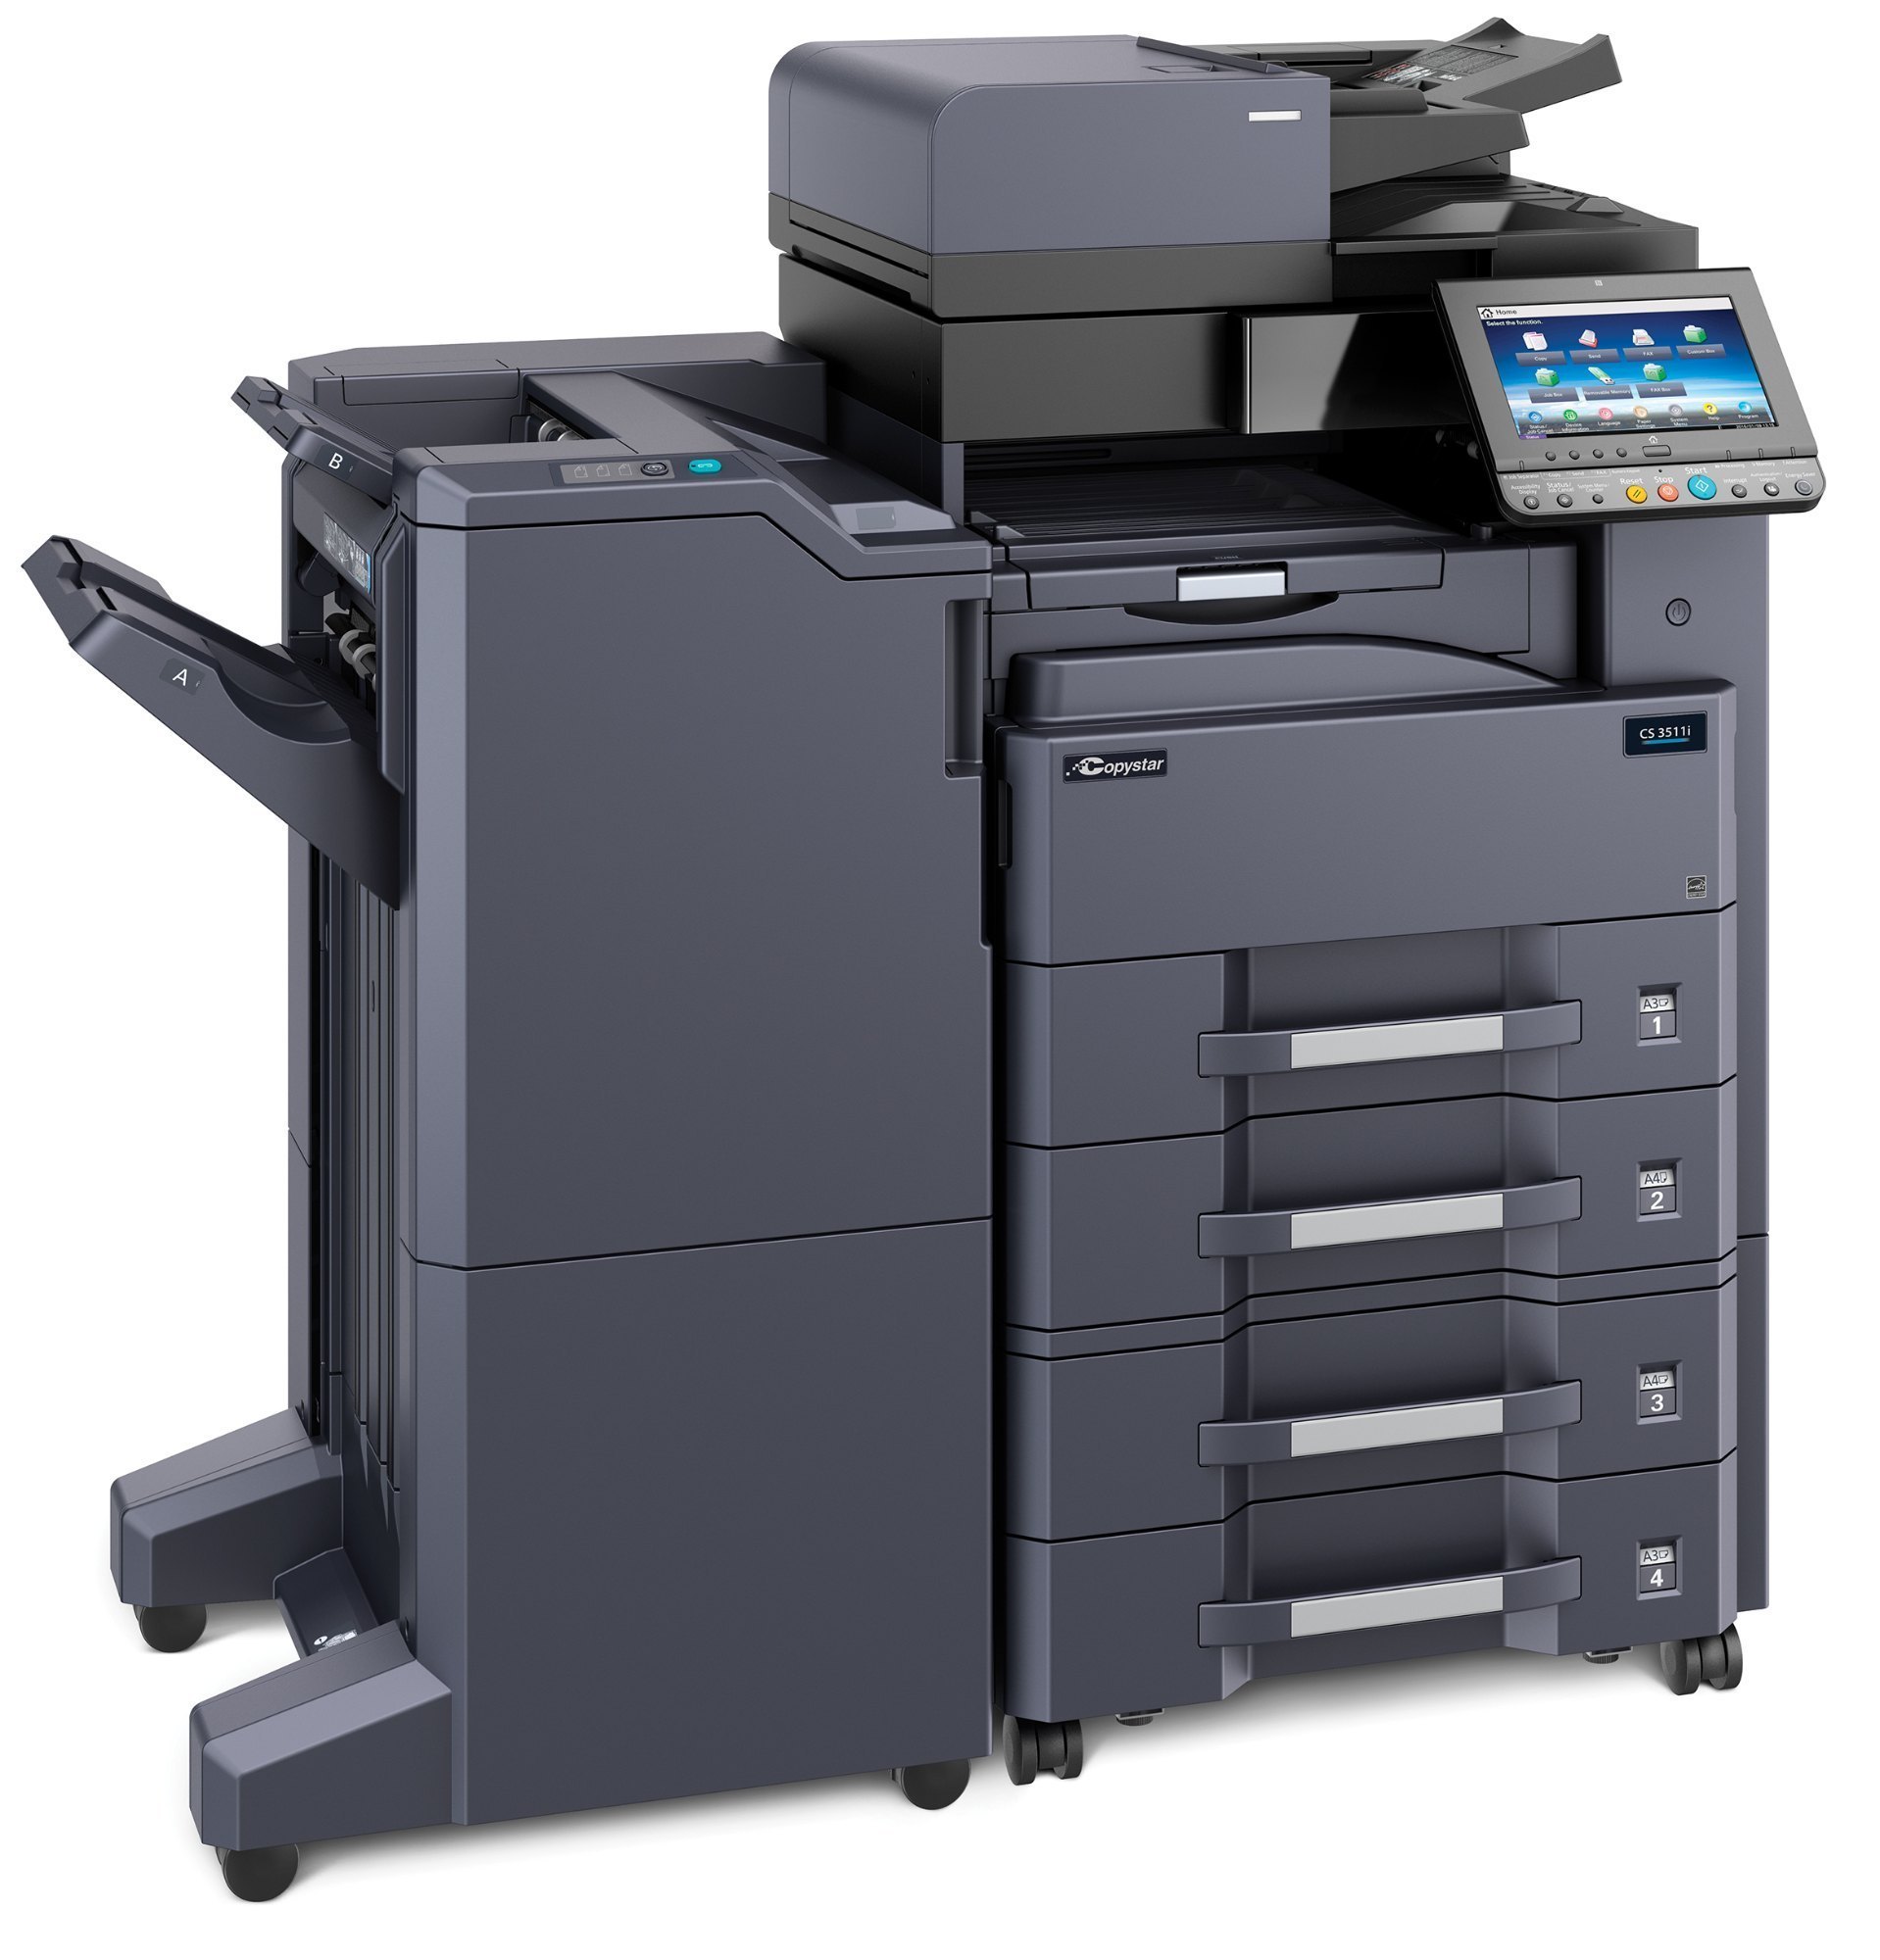 kyocera-taskalfa-3511i-photocopy-machine